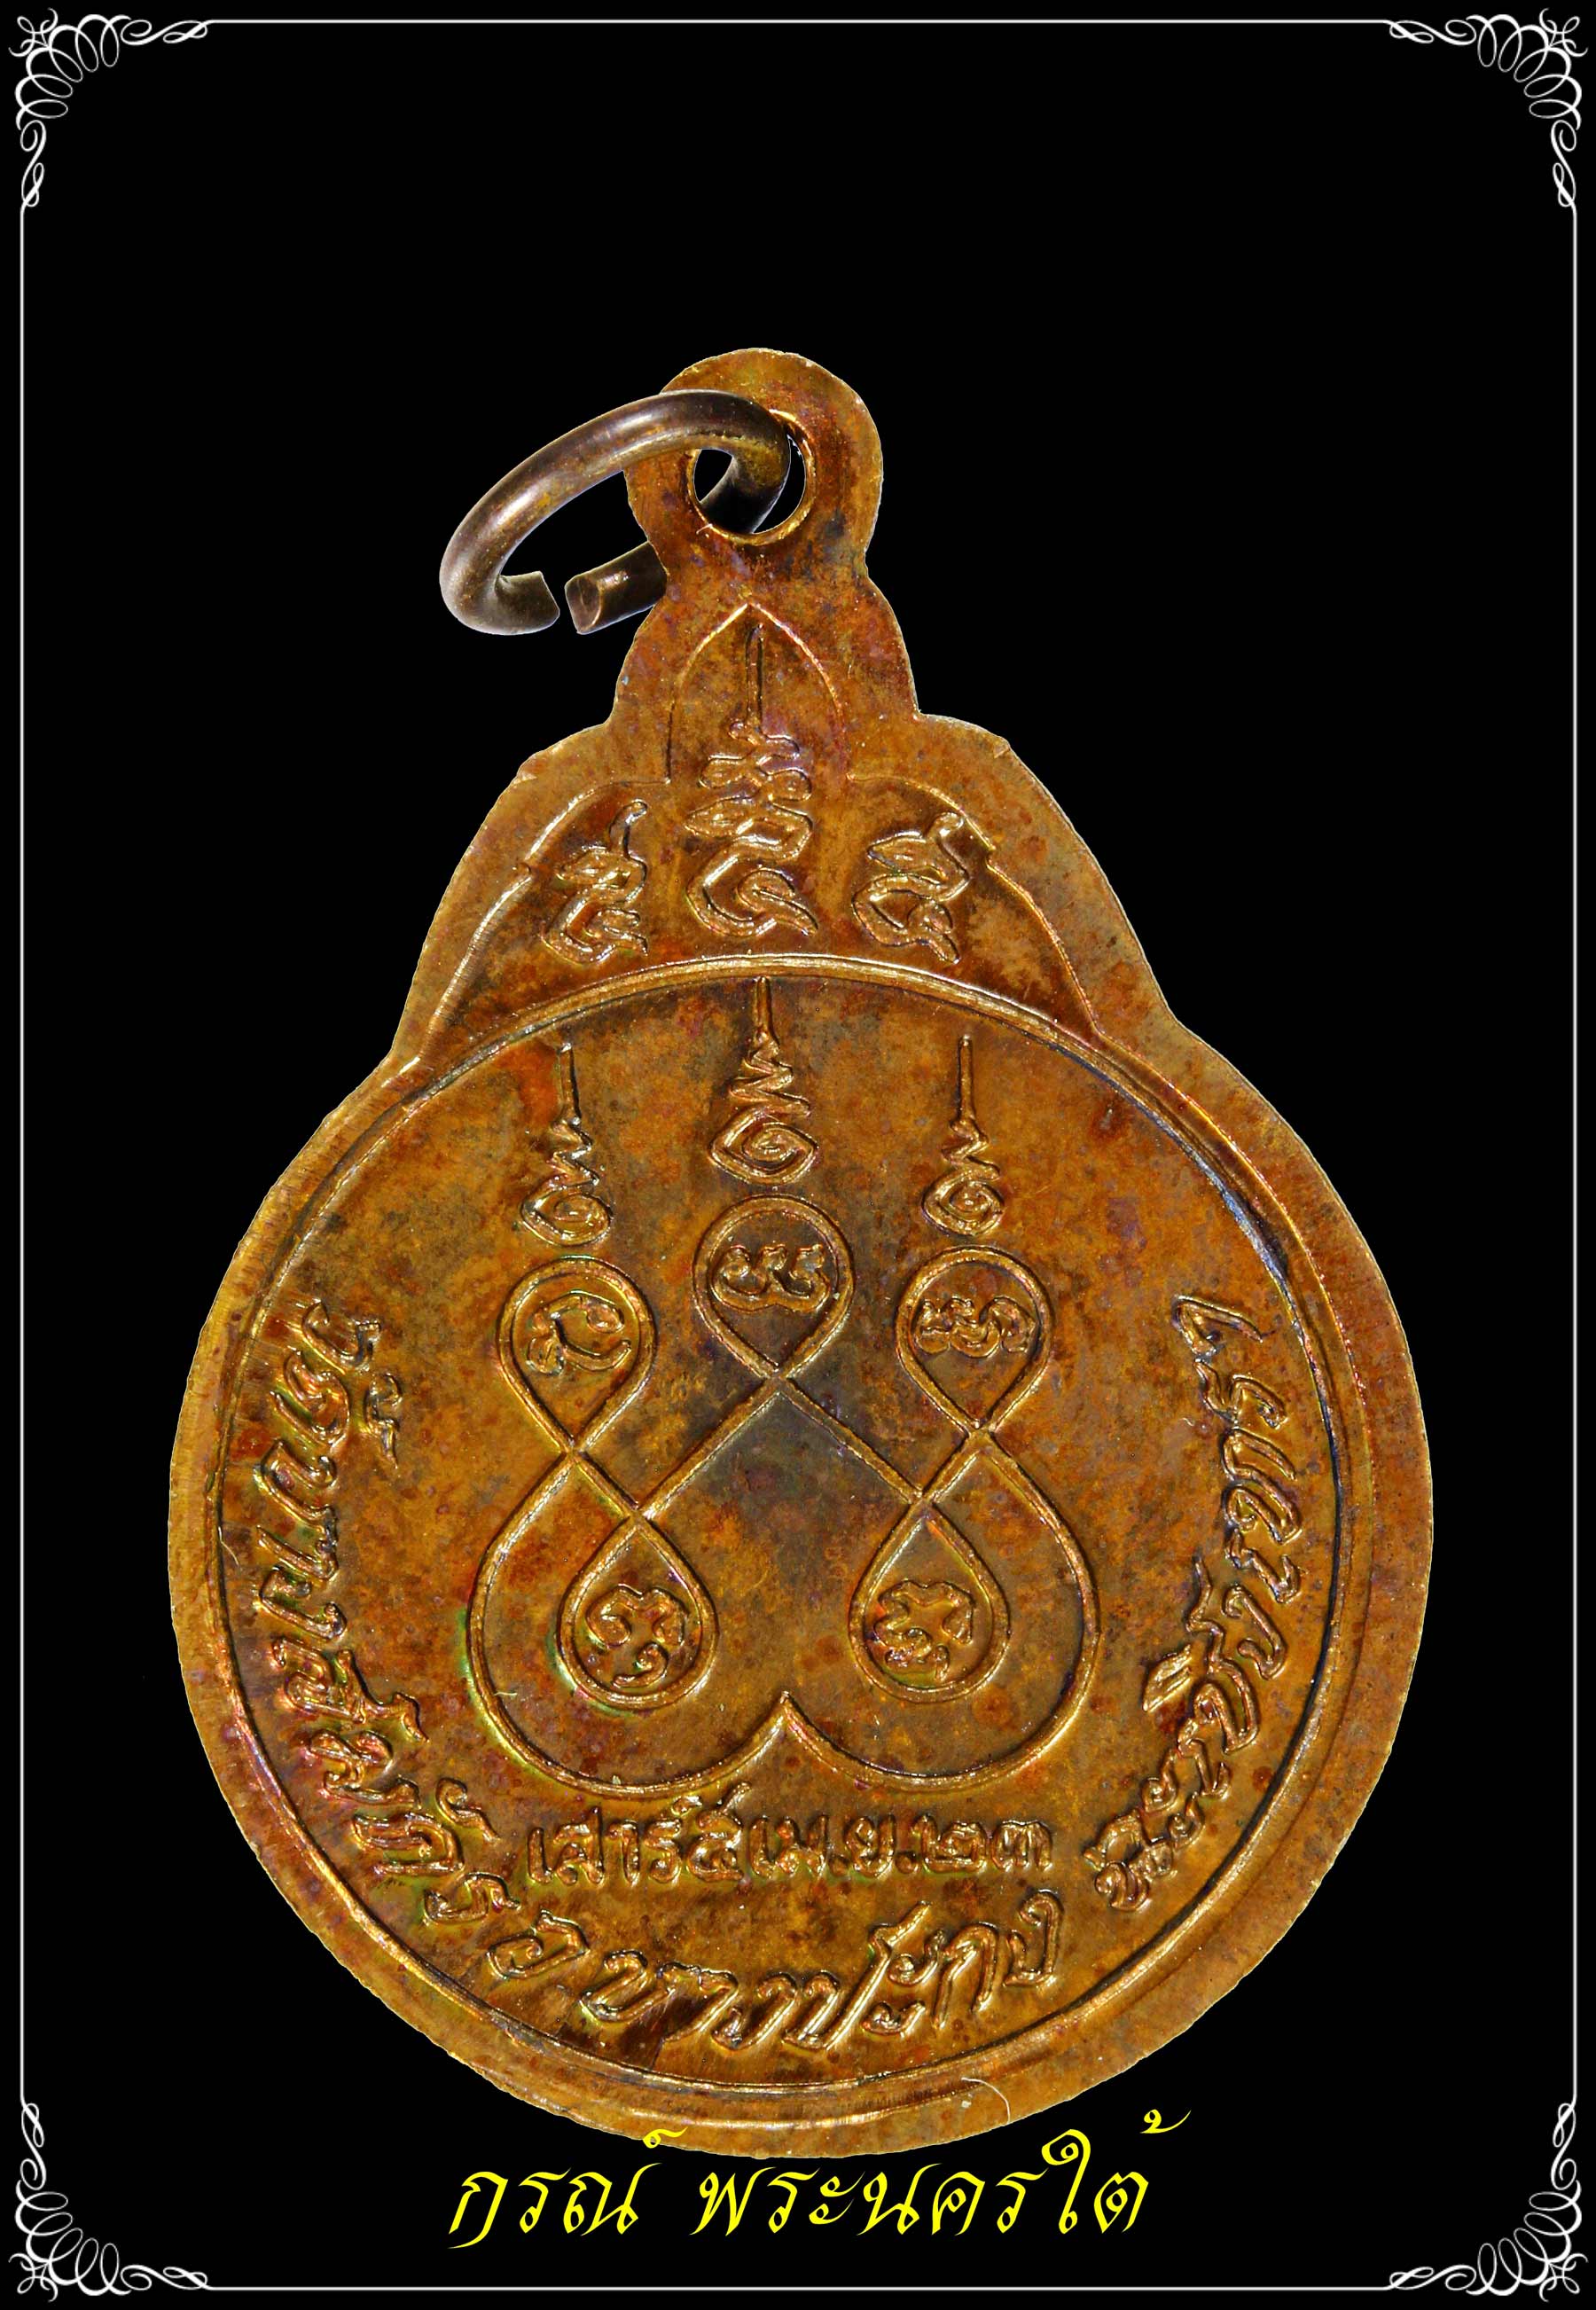 เหรียญหลวงพ่อฟู วัดบางสมัค รุ่นแรก ปี ๒๕๒๓ เนื้อทองแดง